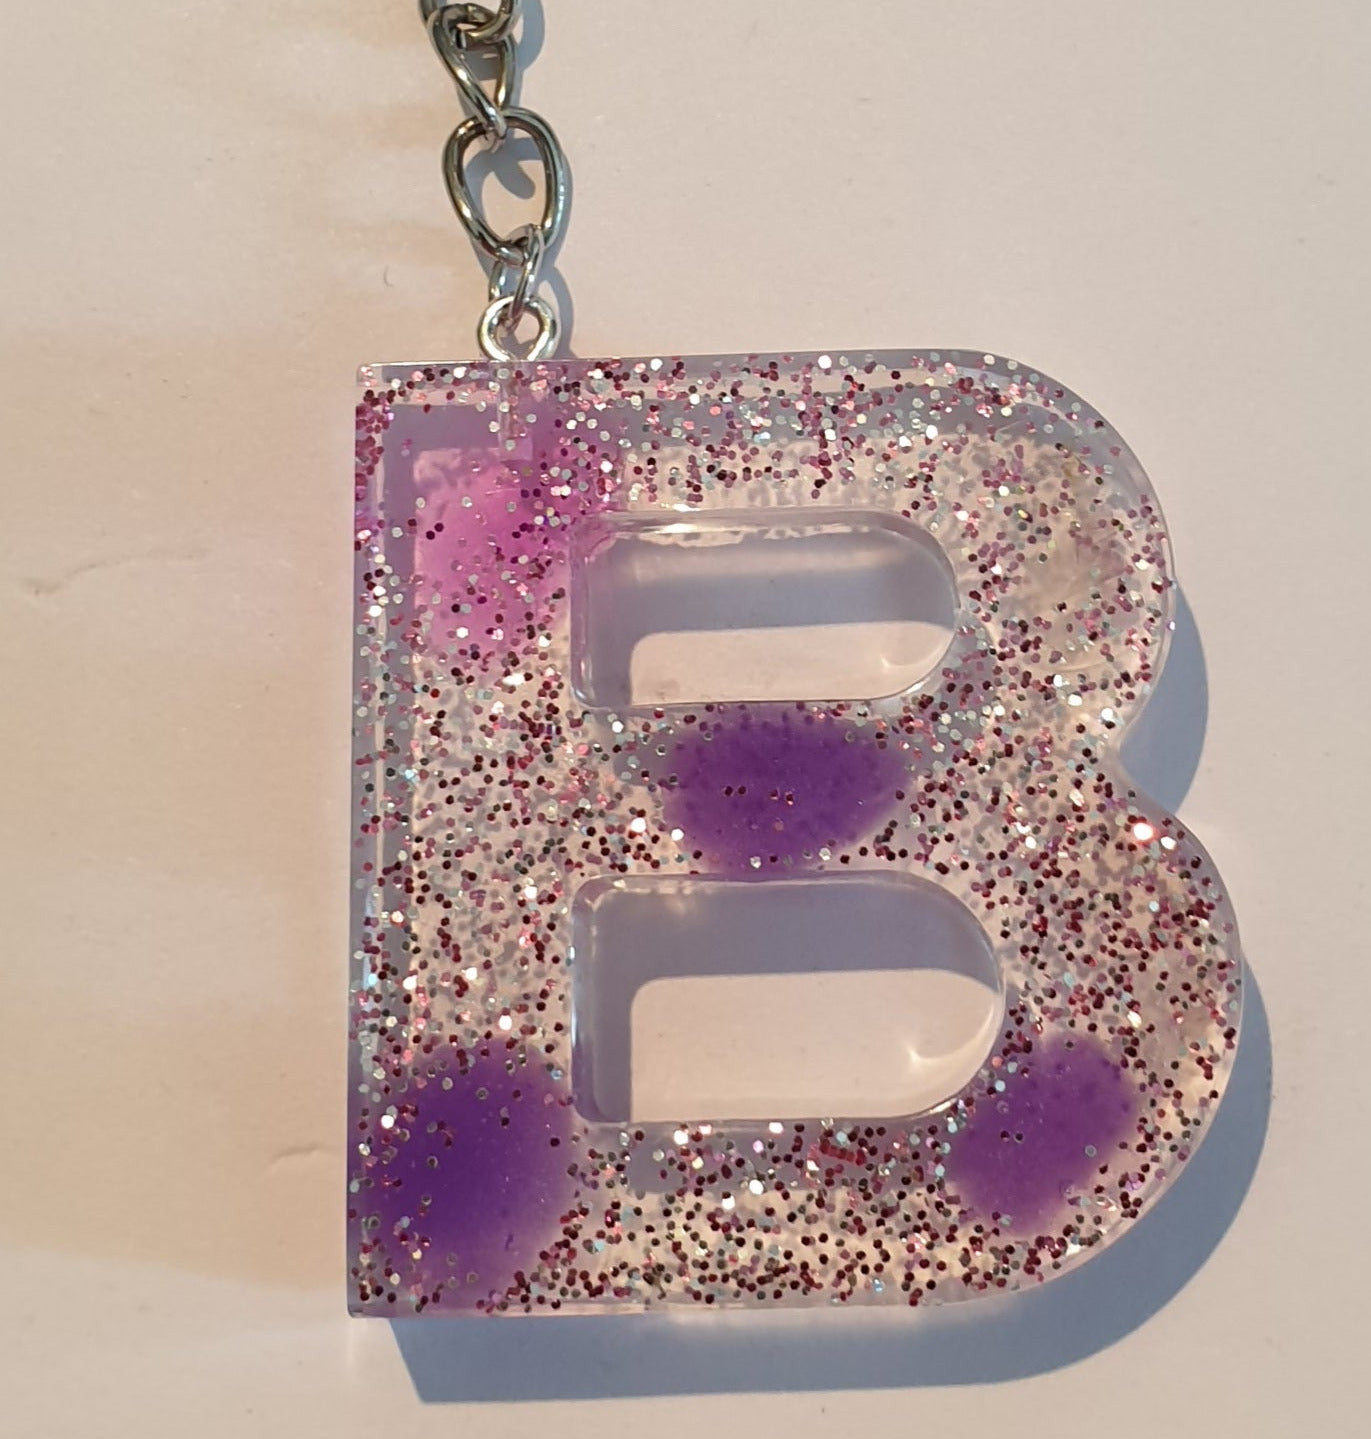 Porte-clés avec lettre B en métal — Gevcen